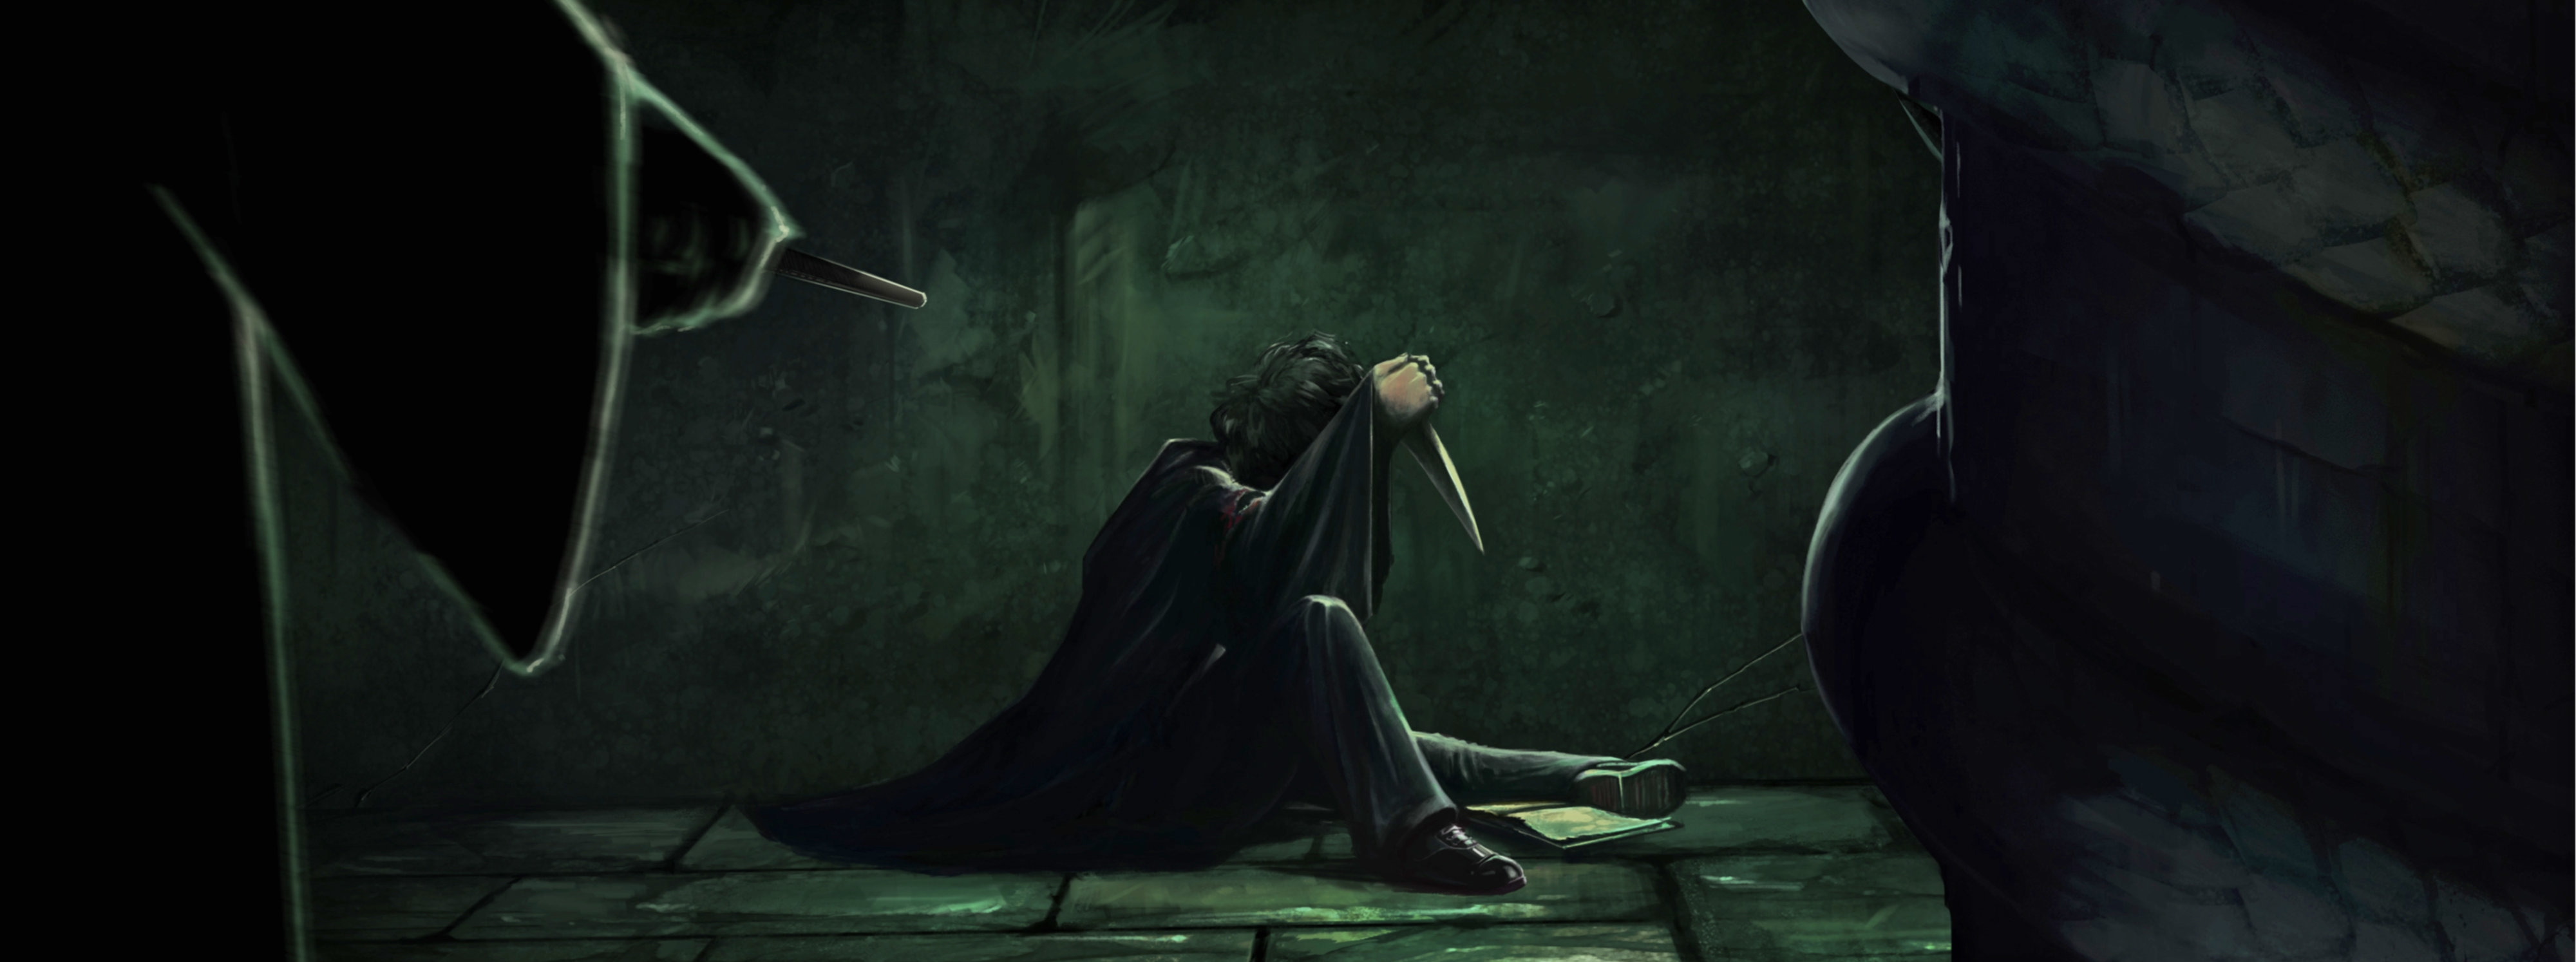 دوخة قط ذهبي  The magical properties and defences of Voldemort's Horcruxes | Wizarding  World